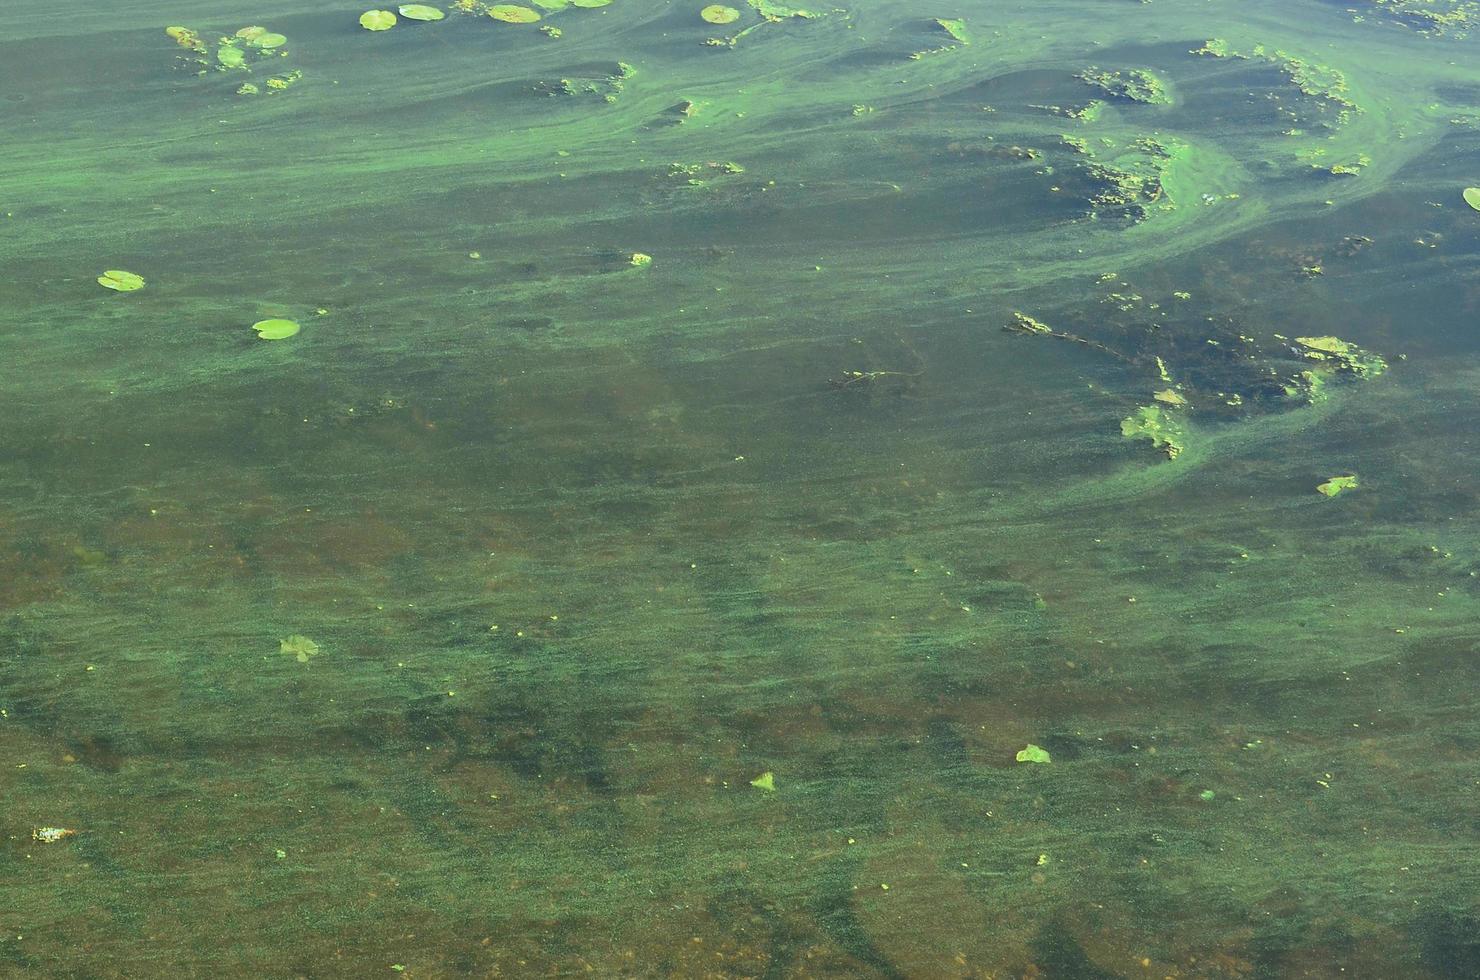 la surface d'un ancien marécage recouvert de lentilles d'eau et de feuilles de lys photo